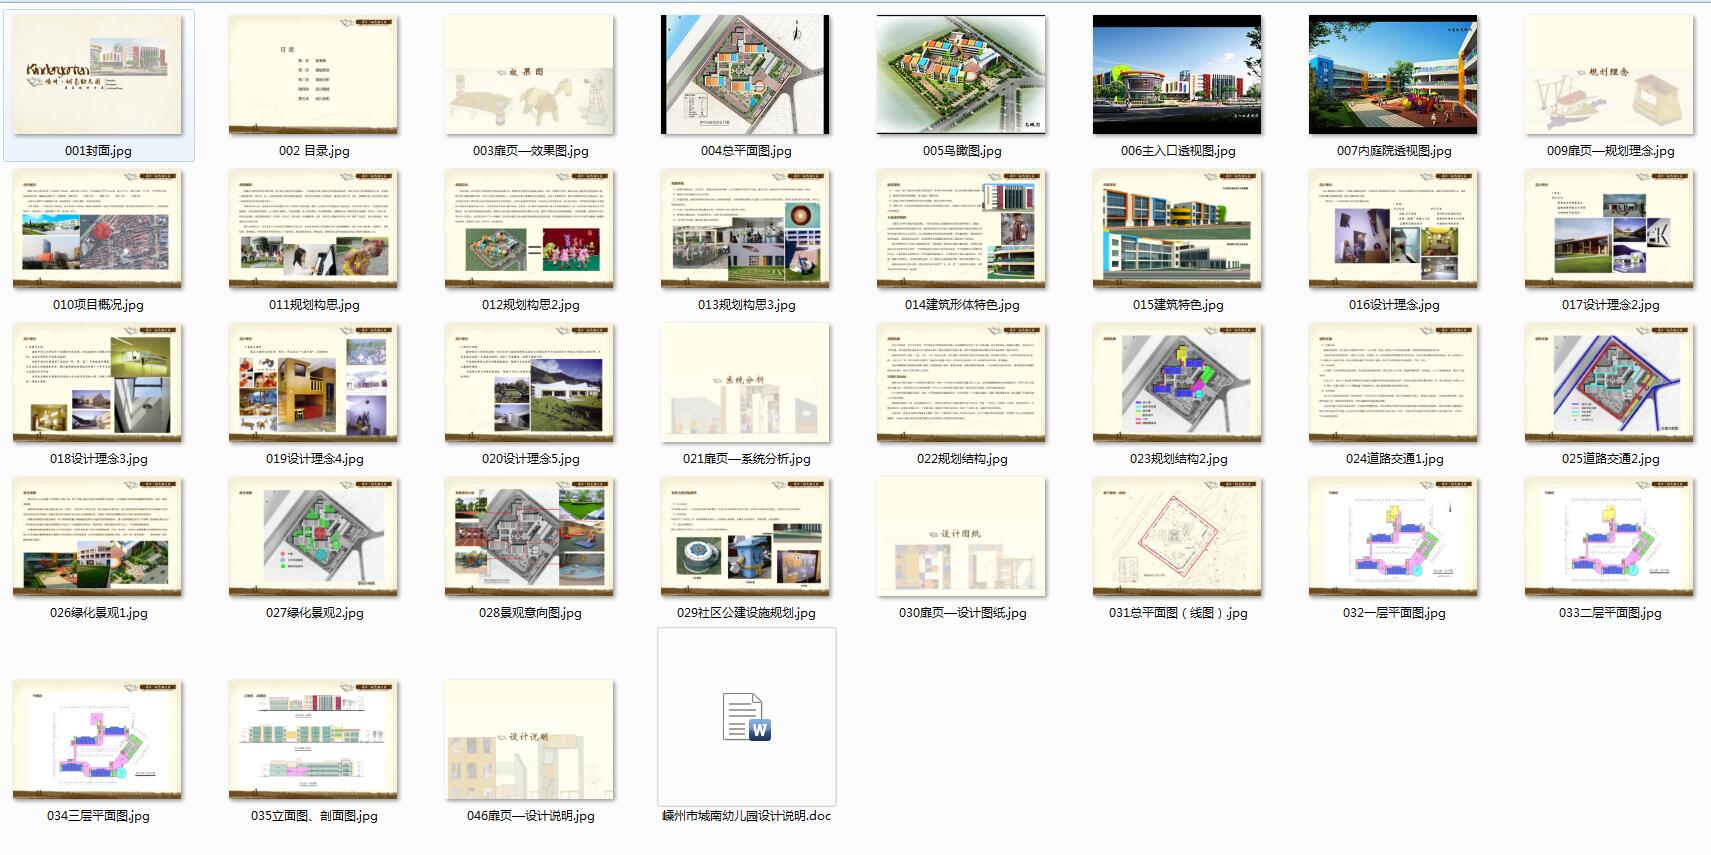 028 二十四班幼儿园建筑方案设计（CAD+文本）-5